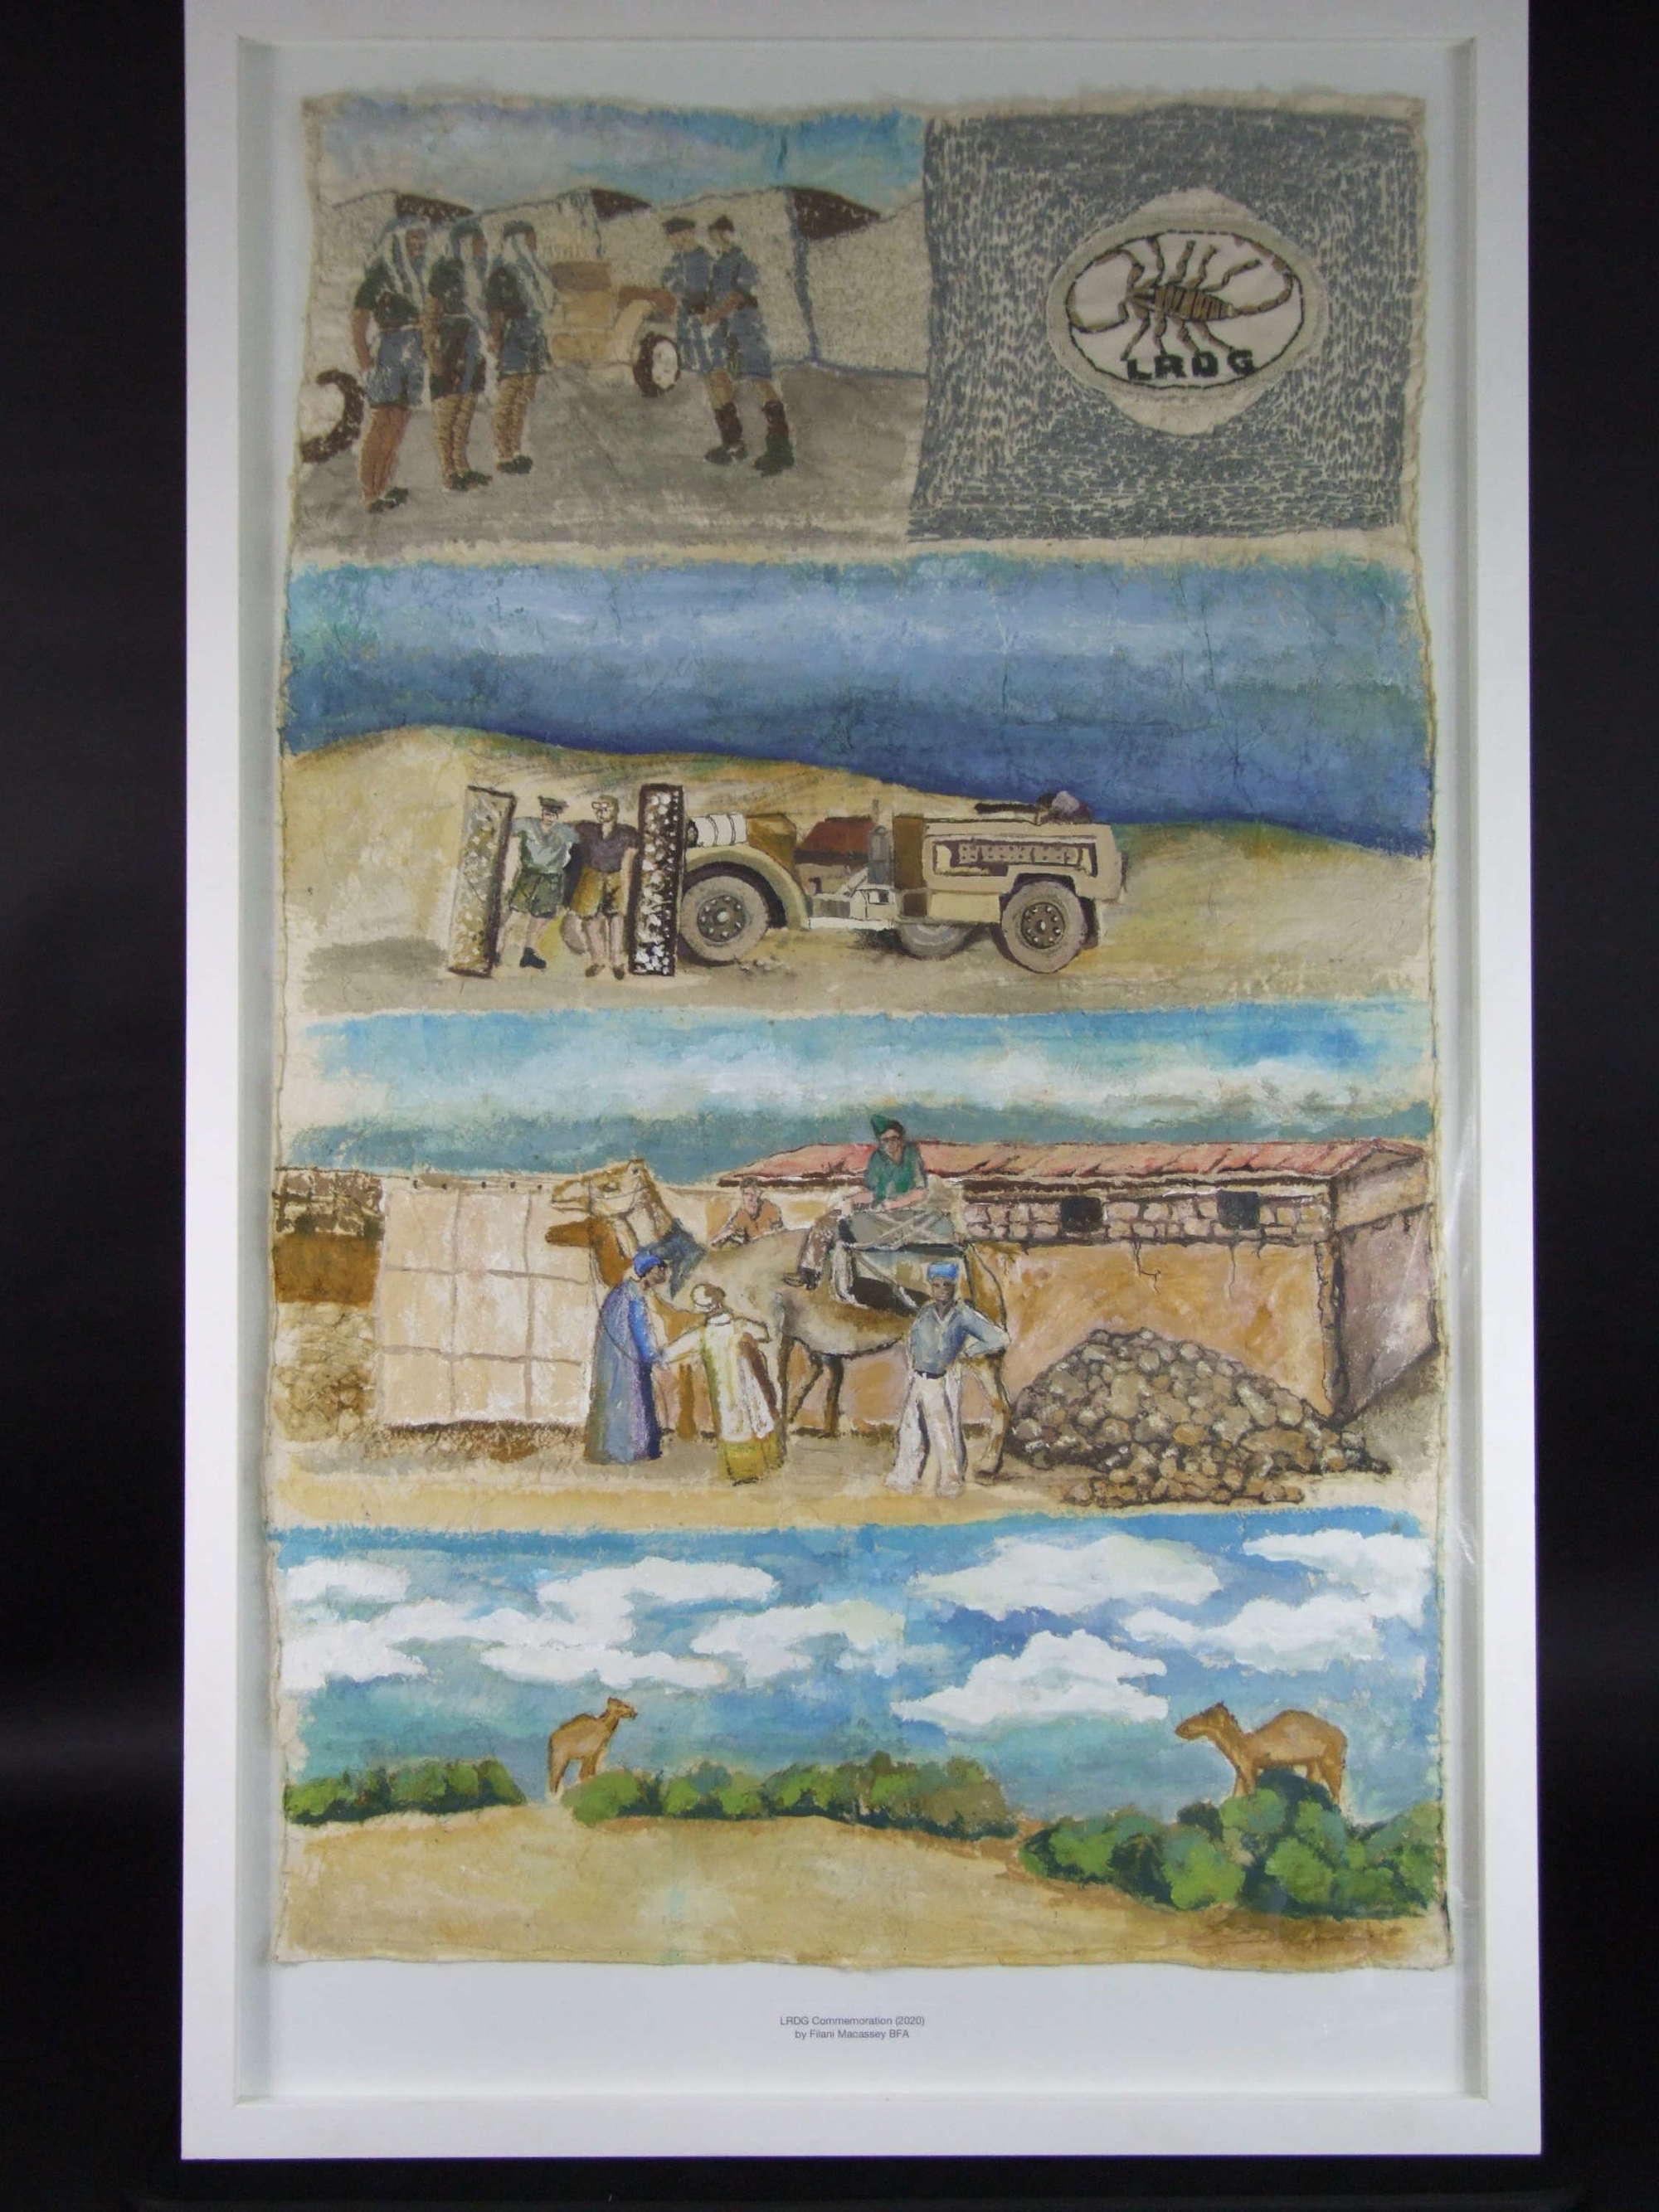 Long Range Desert Group Commemorative Artwork